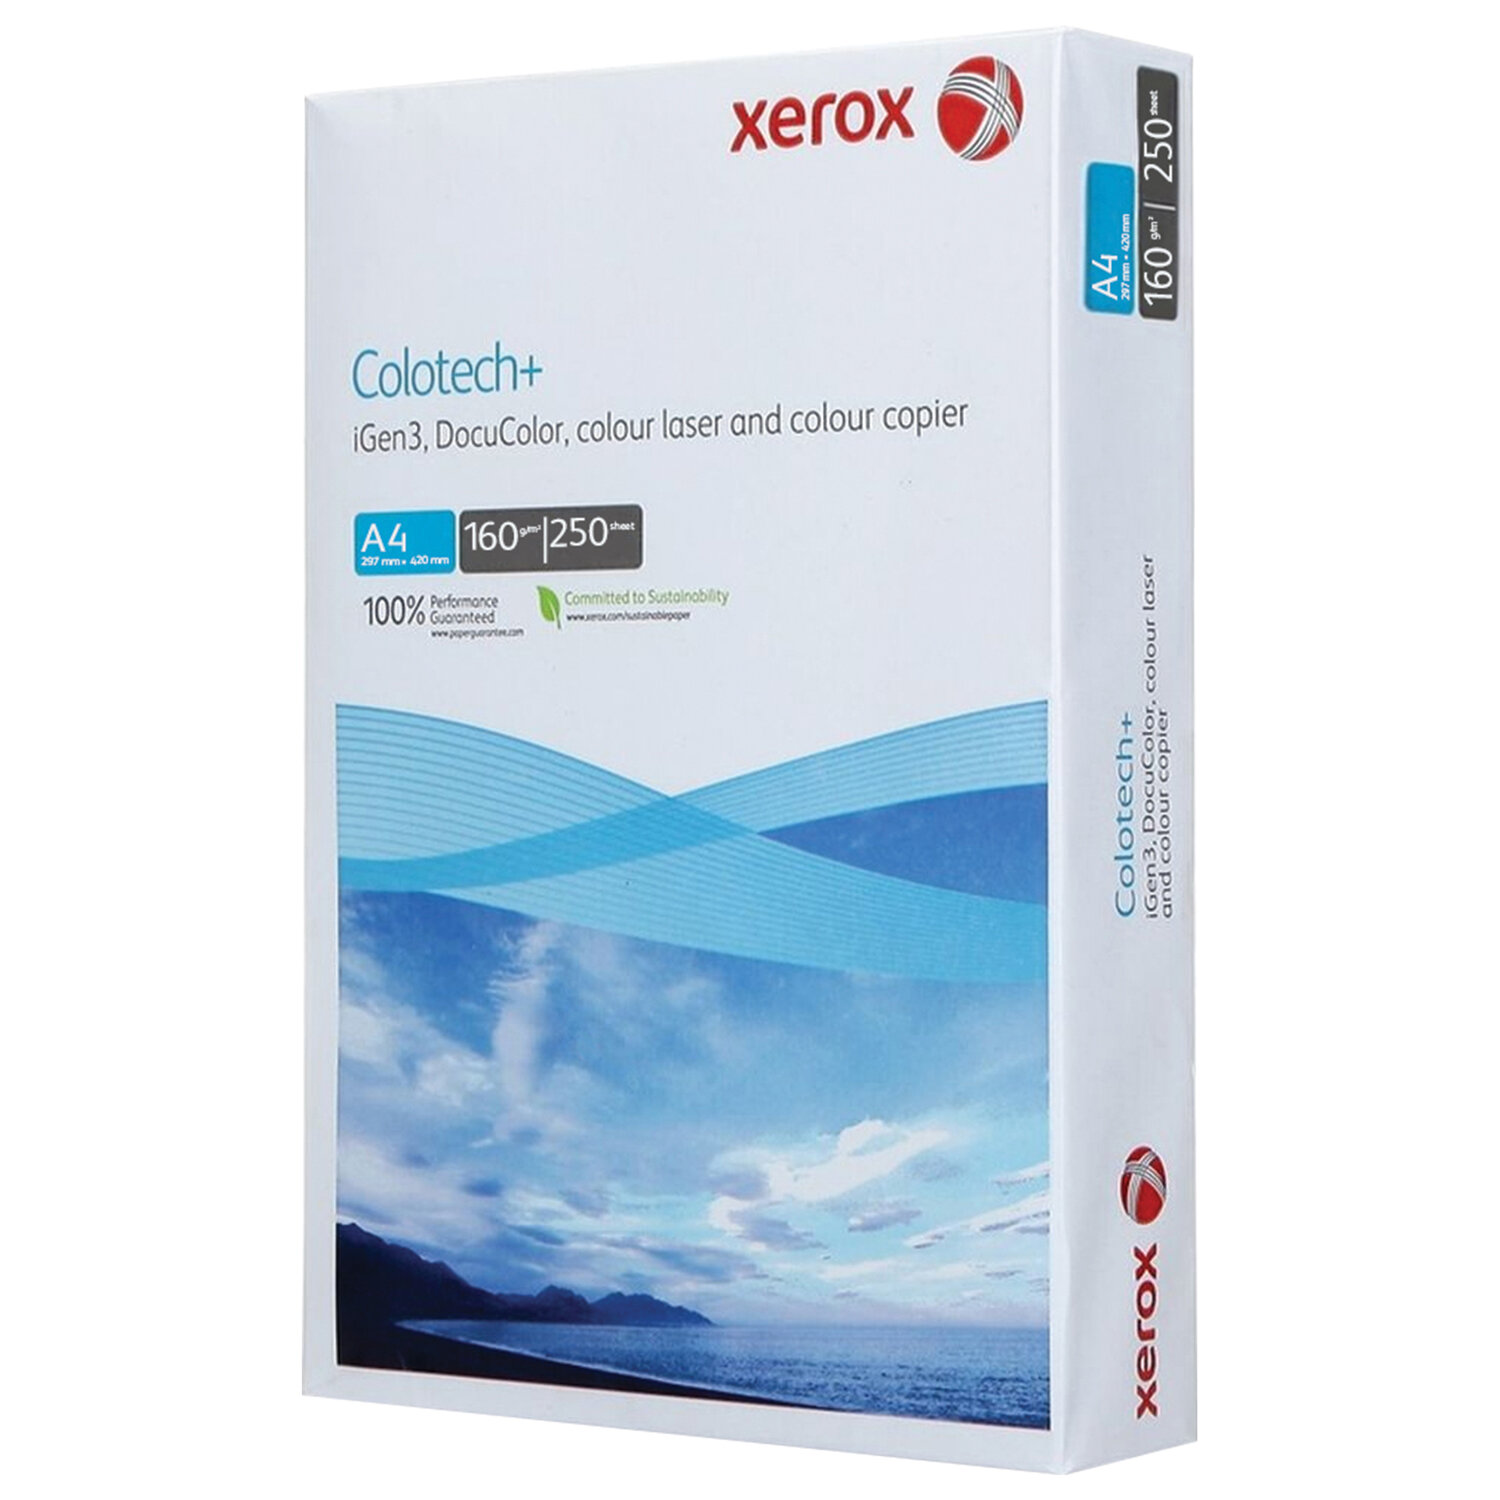      XEROX COLOTECH+ Blue 003R94656, 4, 160 /2, 250 ., 161%